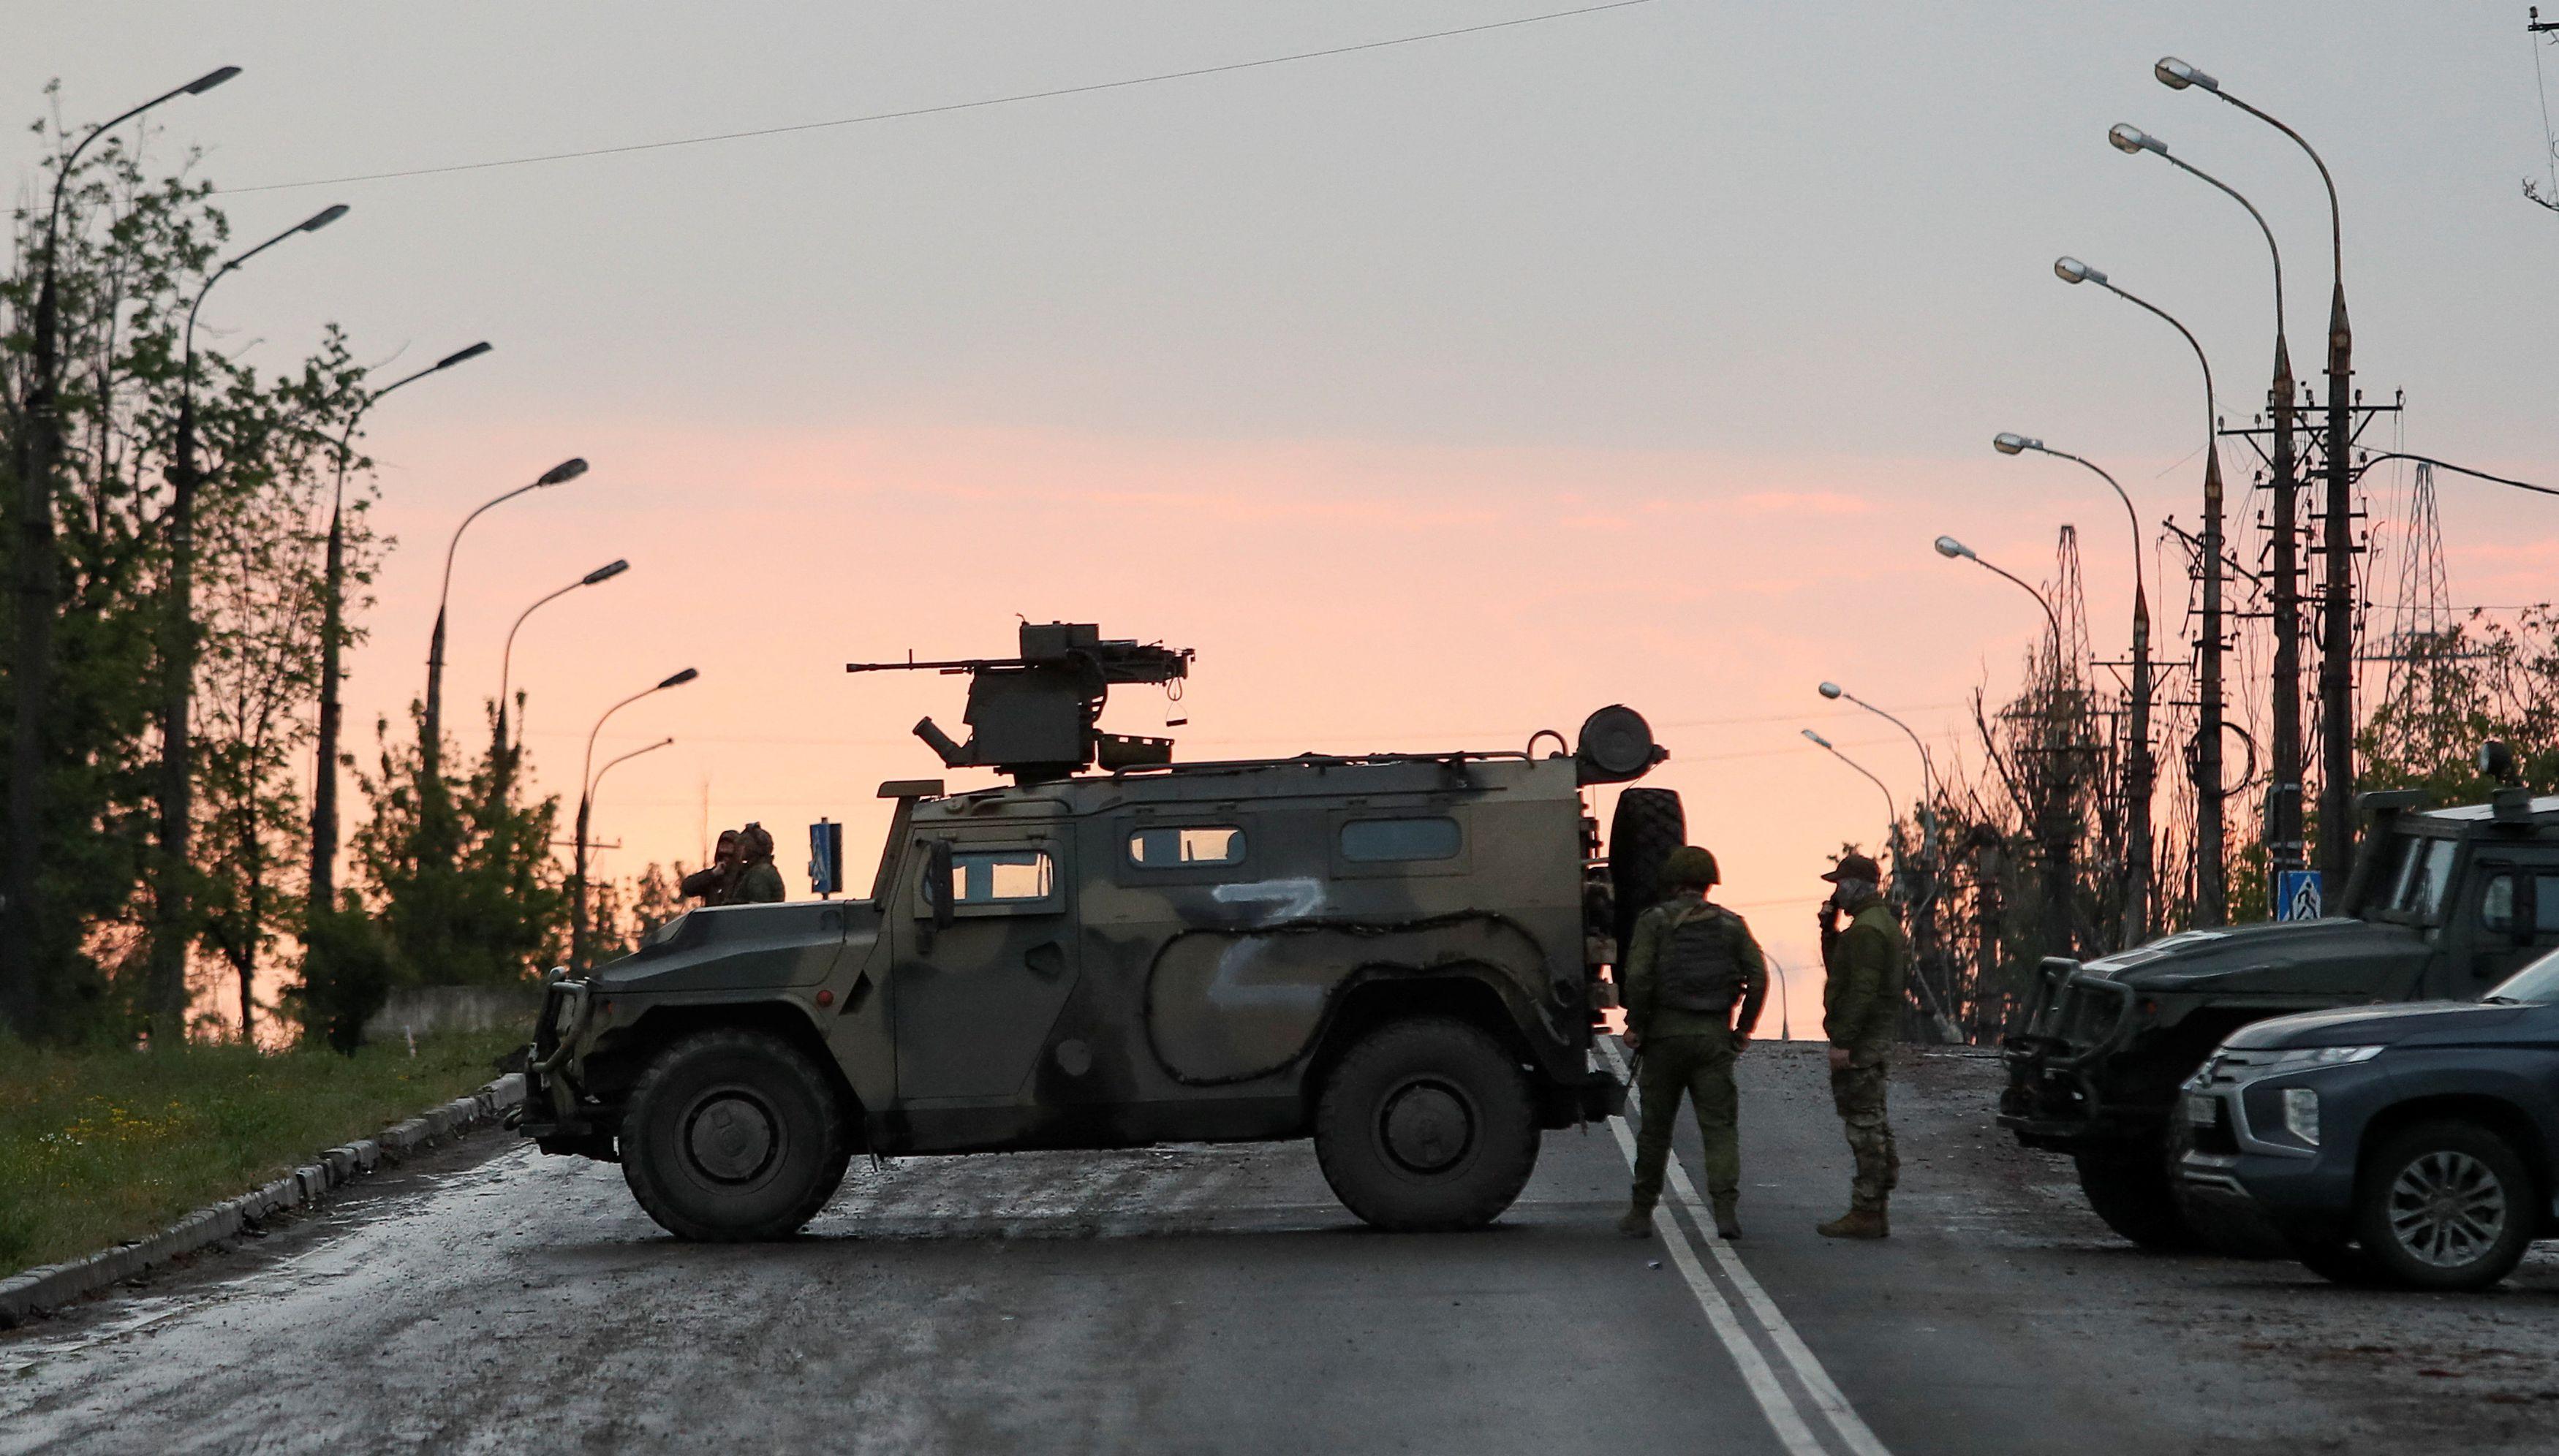 Militares russos fazem guarda em estrada próxima a cidade de Mariupol nesta quinta-feira, 19. Após conquistar Azovstal, Rússia se prepara para ter domínio completo sobre a cidade